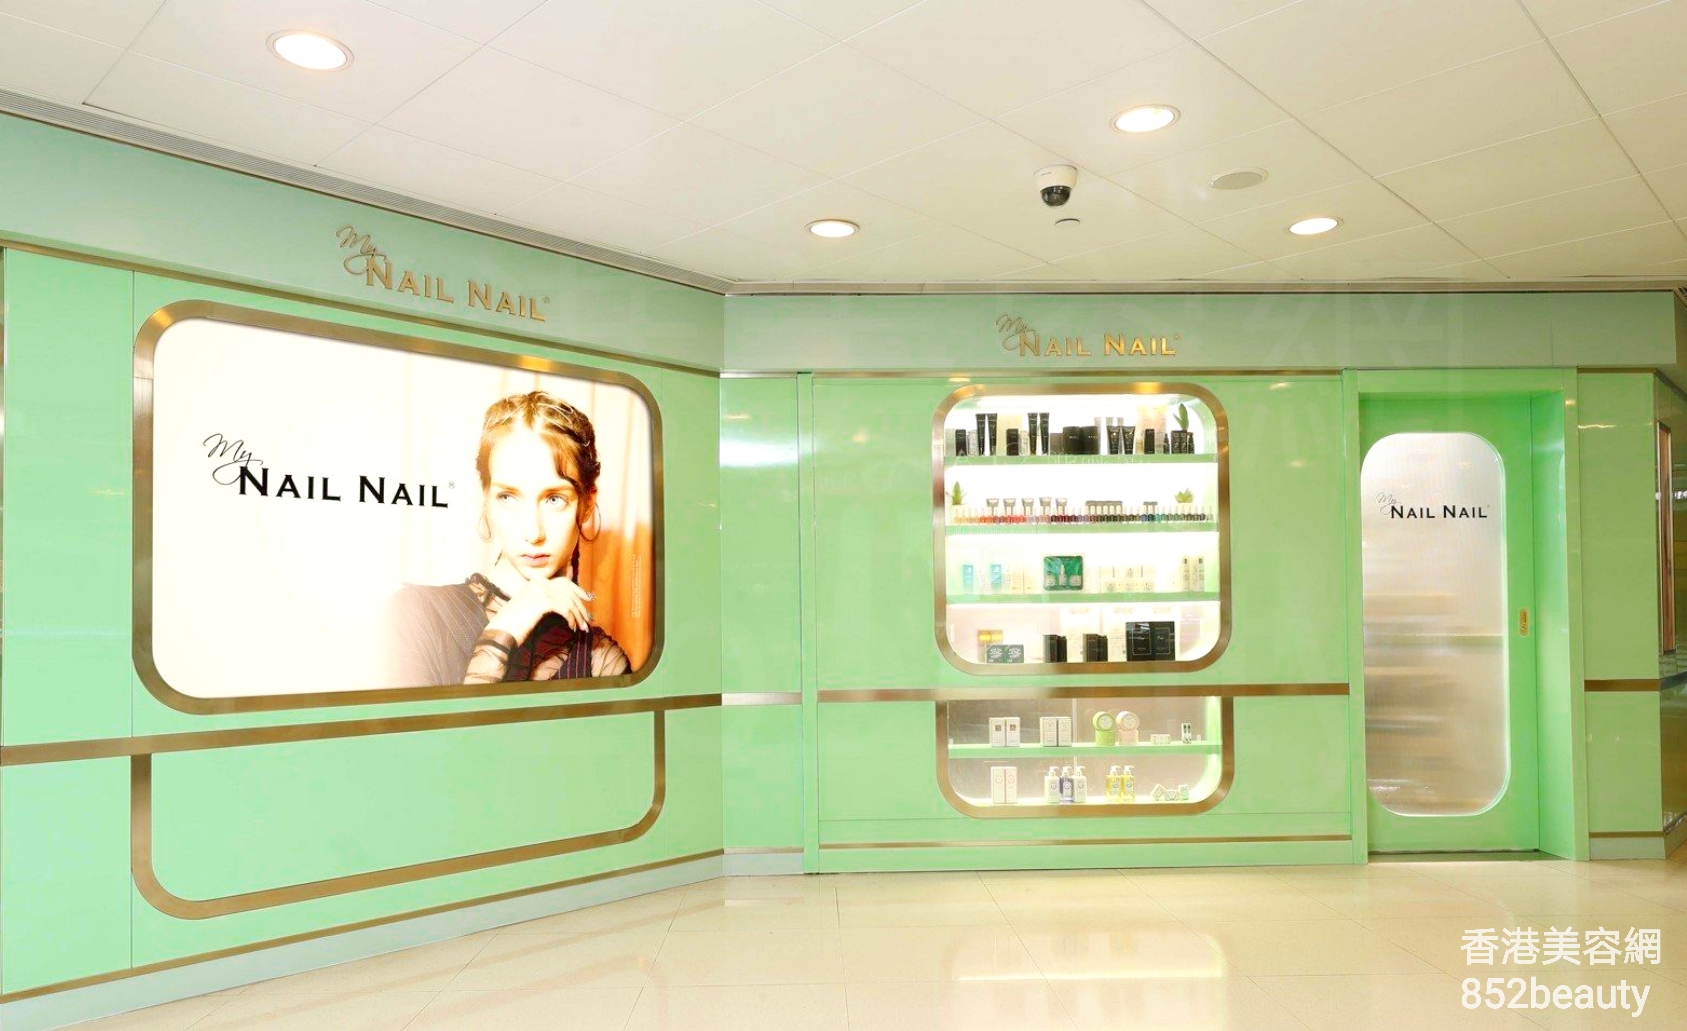 美容院 Beauty Salon: Nail Nail (Central building)